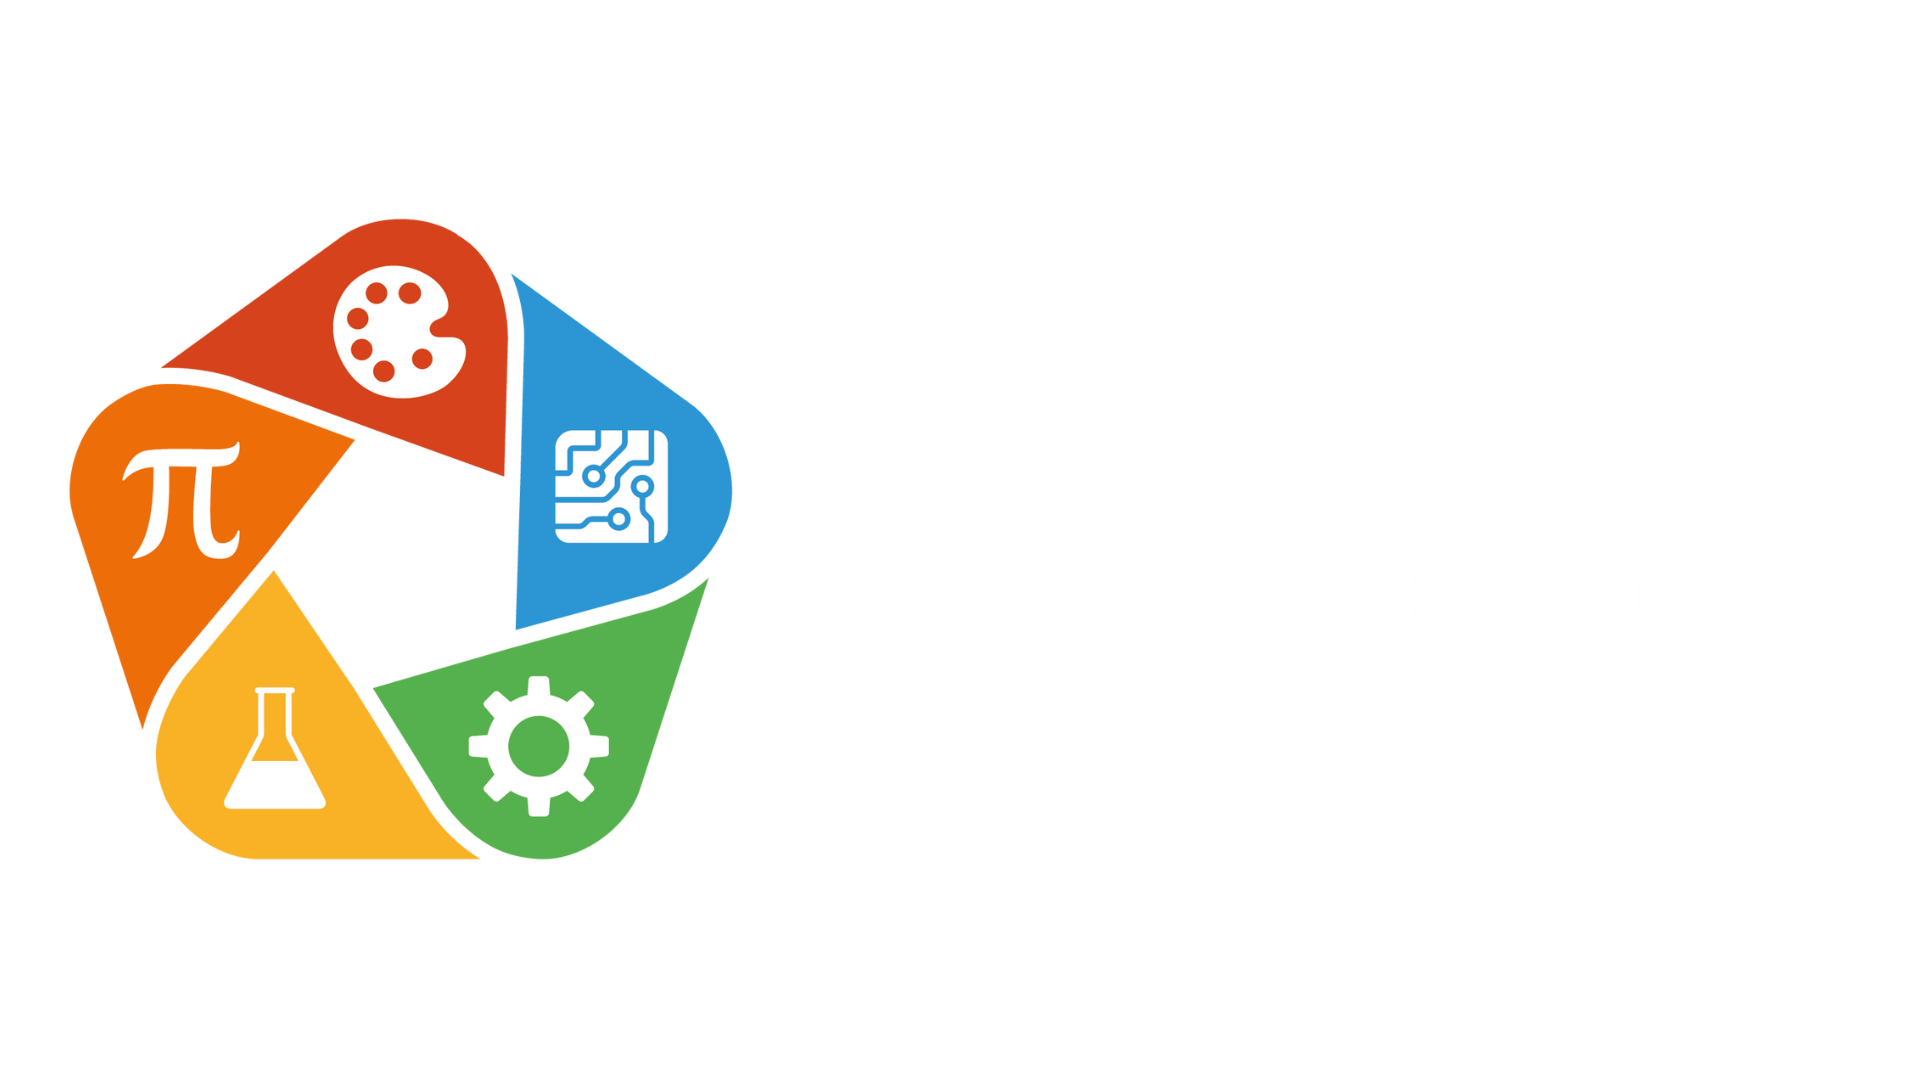 TMSA PUBLIC CHARTER SCHOOLS, LOGO, ENROLLMENT